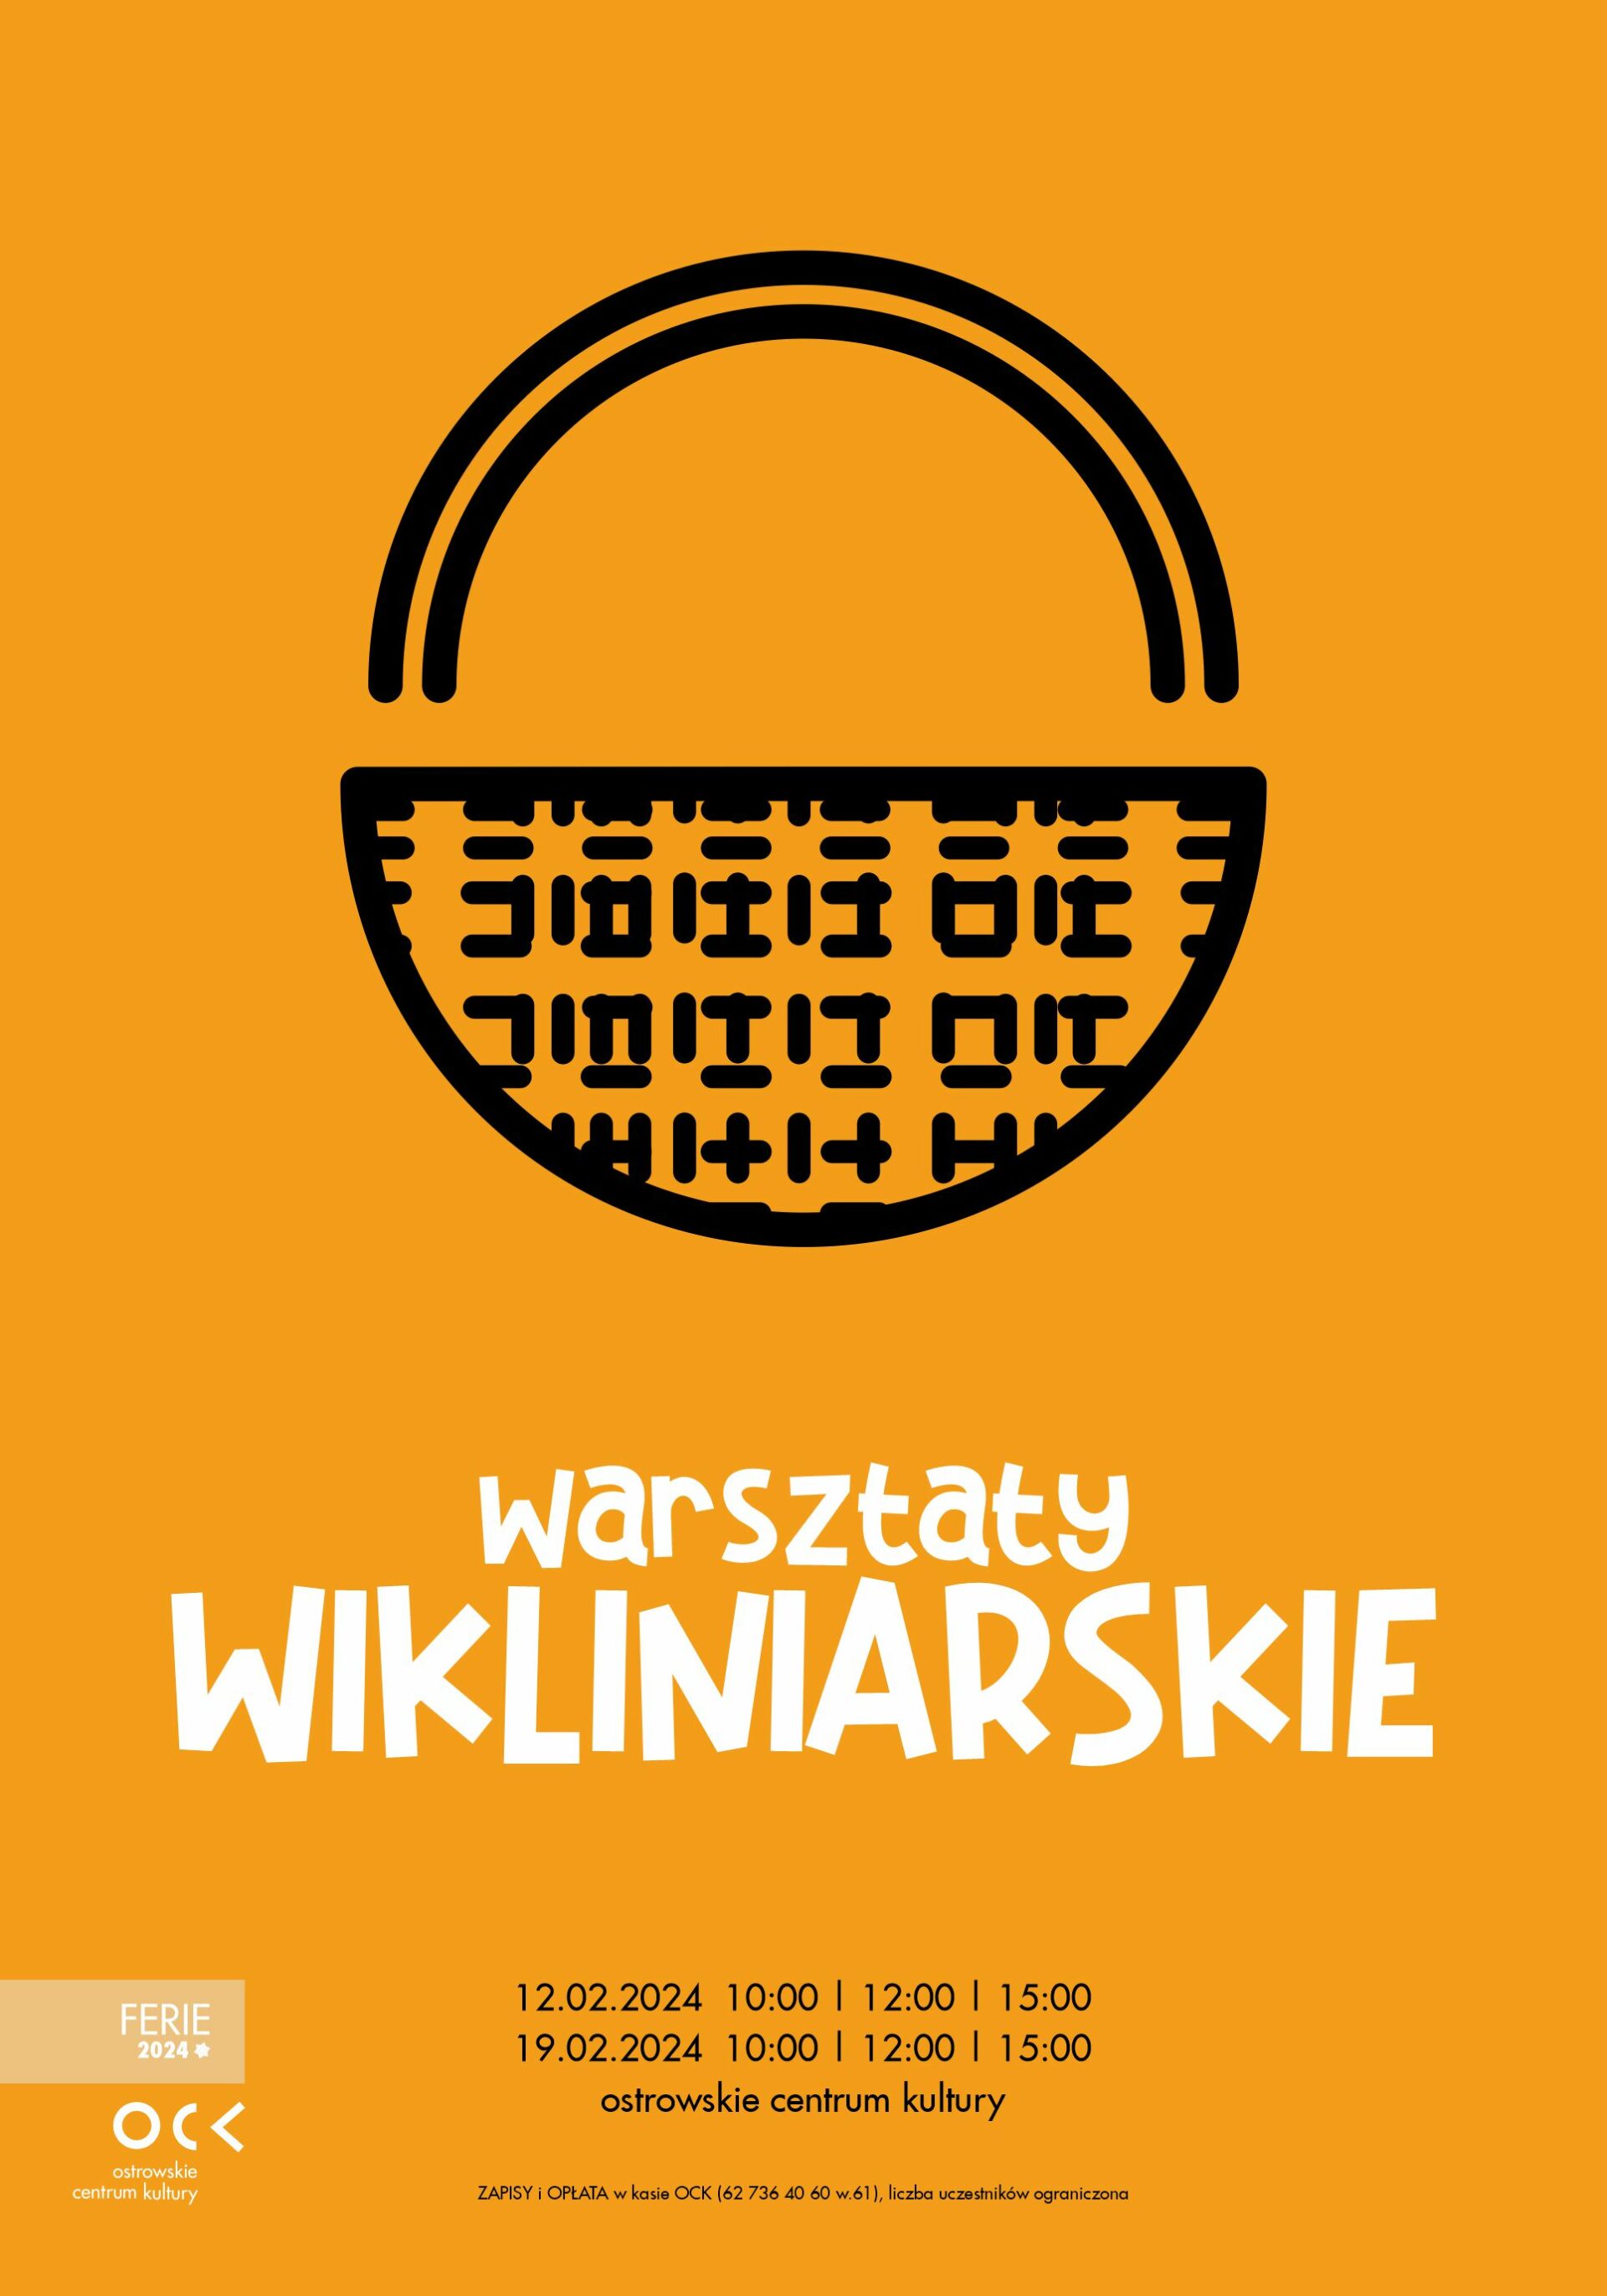 Ferie 2024 | Warsztaty WIKLINIARSKIE